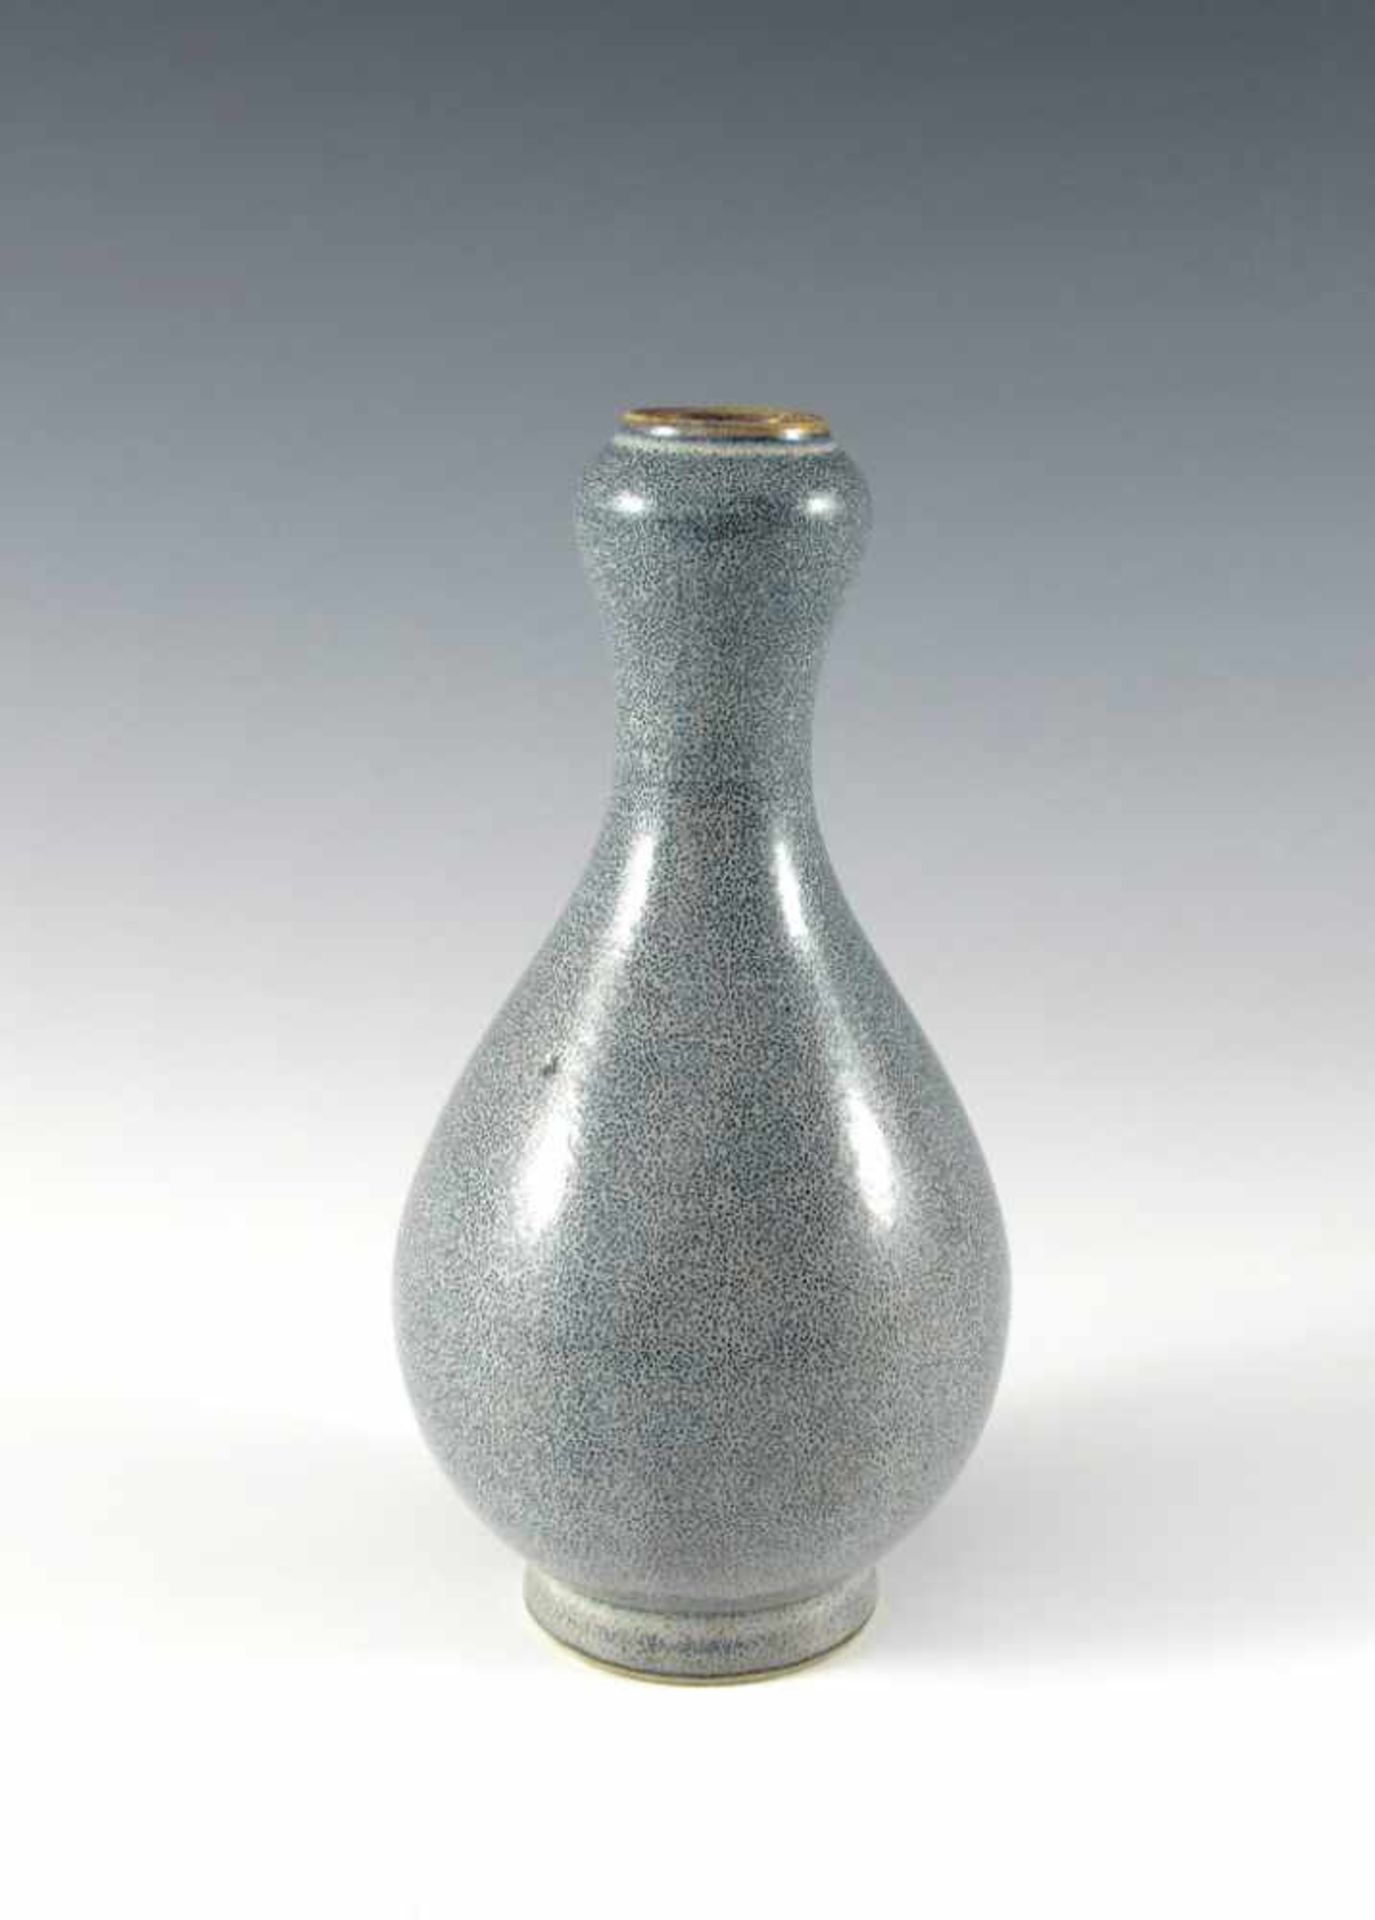 Vase. Keulenform. Feine Robin's egg-Glasur. Bodenmarke mit sechs Charakteren. China. H 16 cm